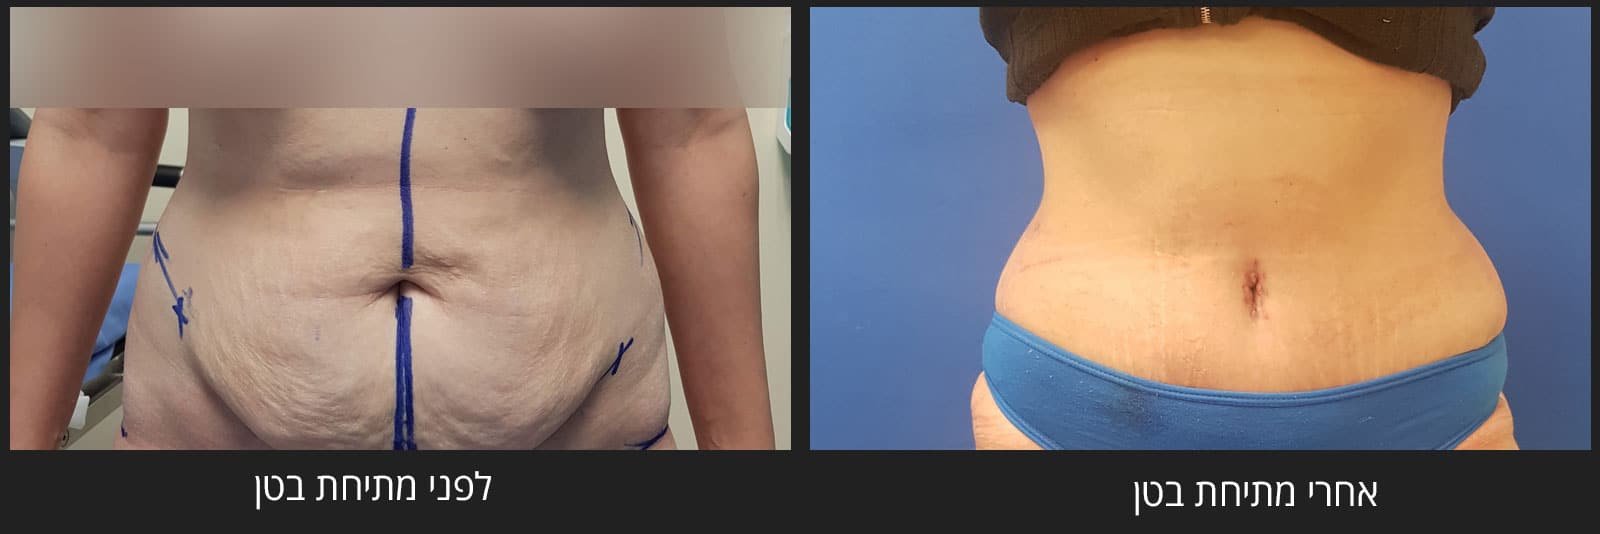 ניתוח מתיחת בטן - לפני ואחרי